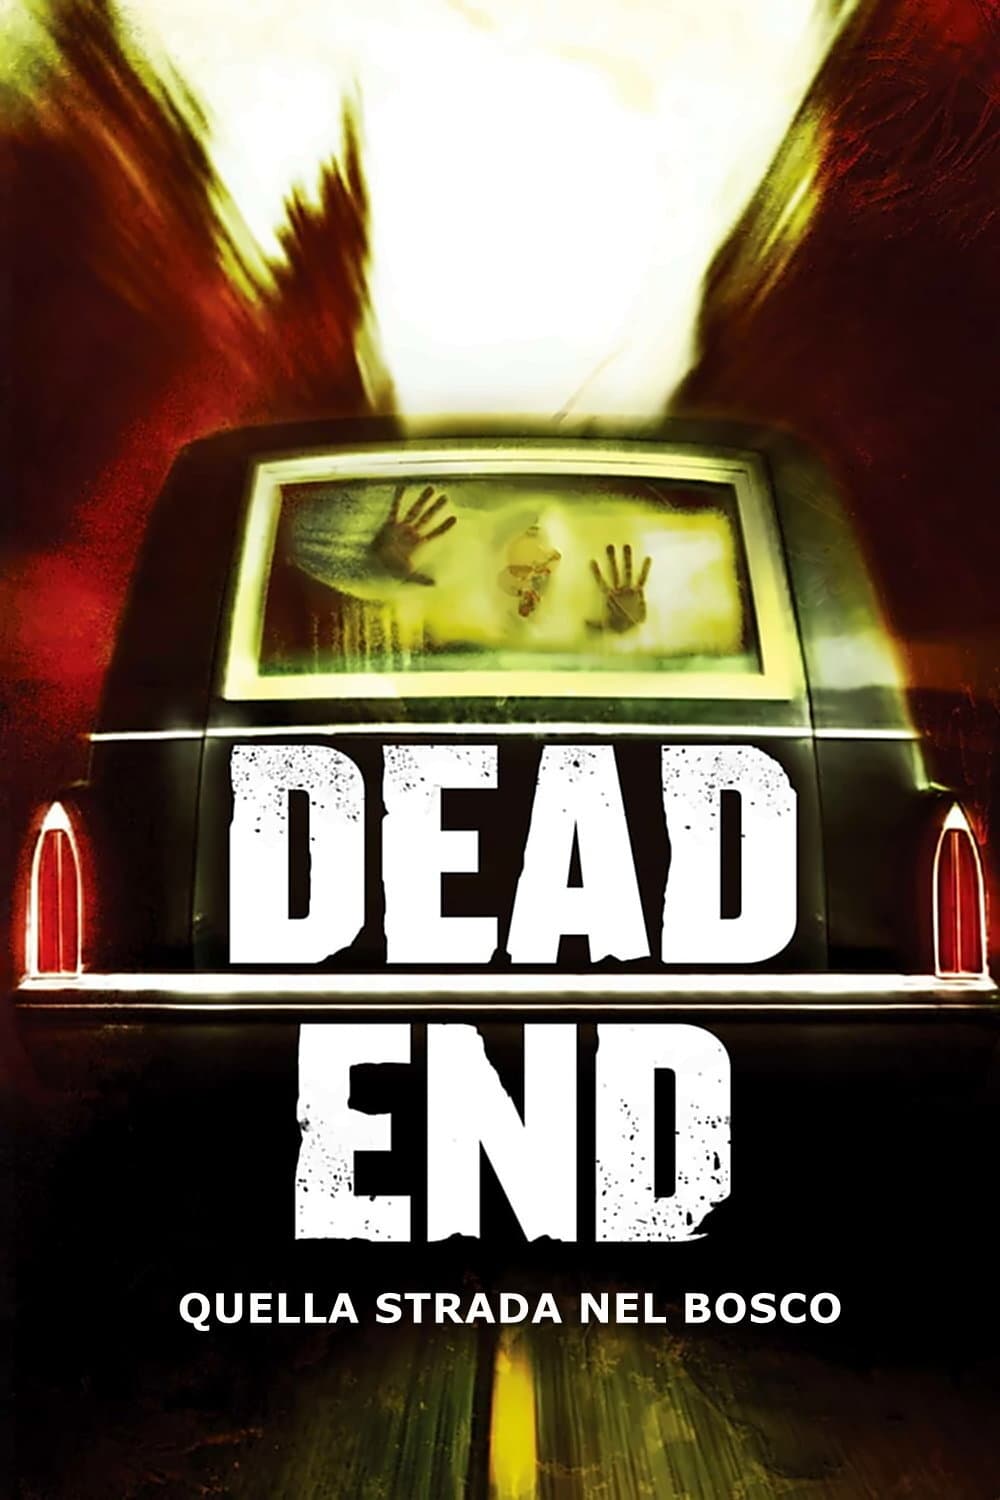 Dead End - Quella strada nel bosco film